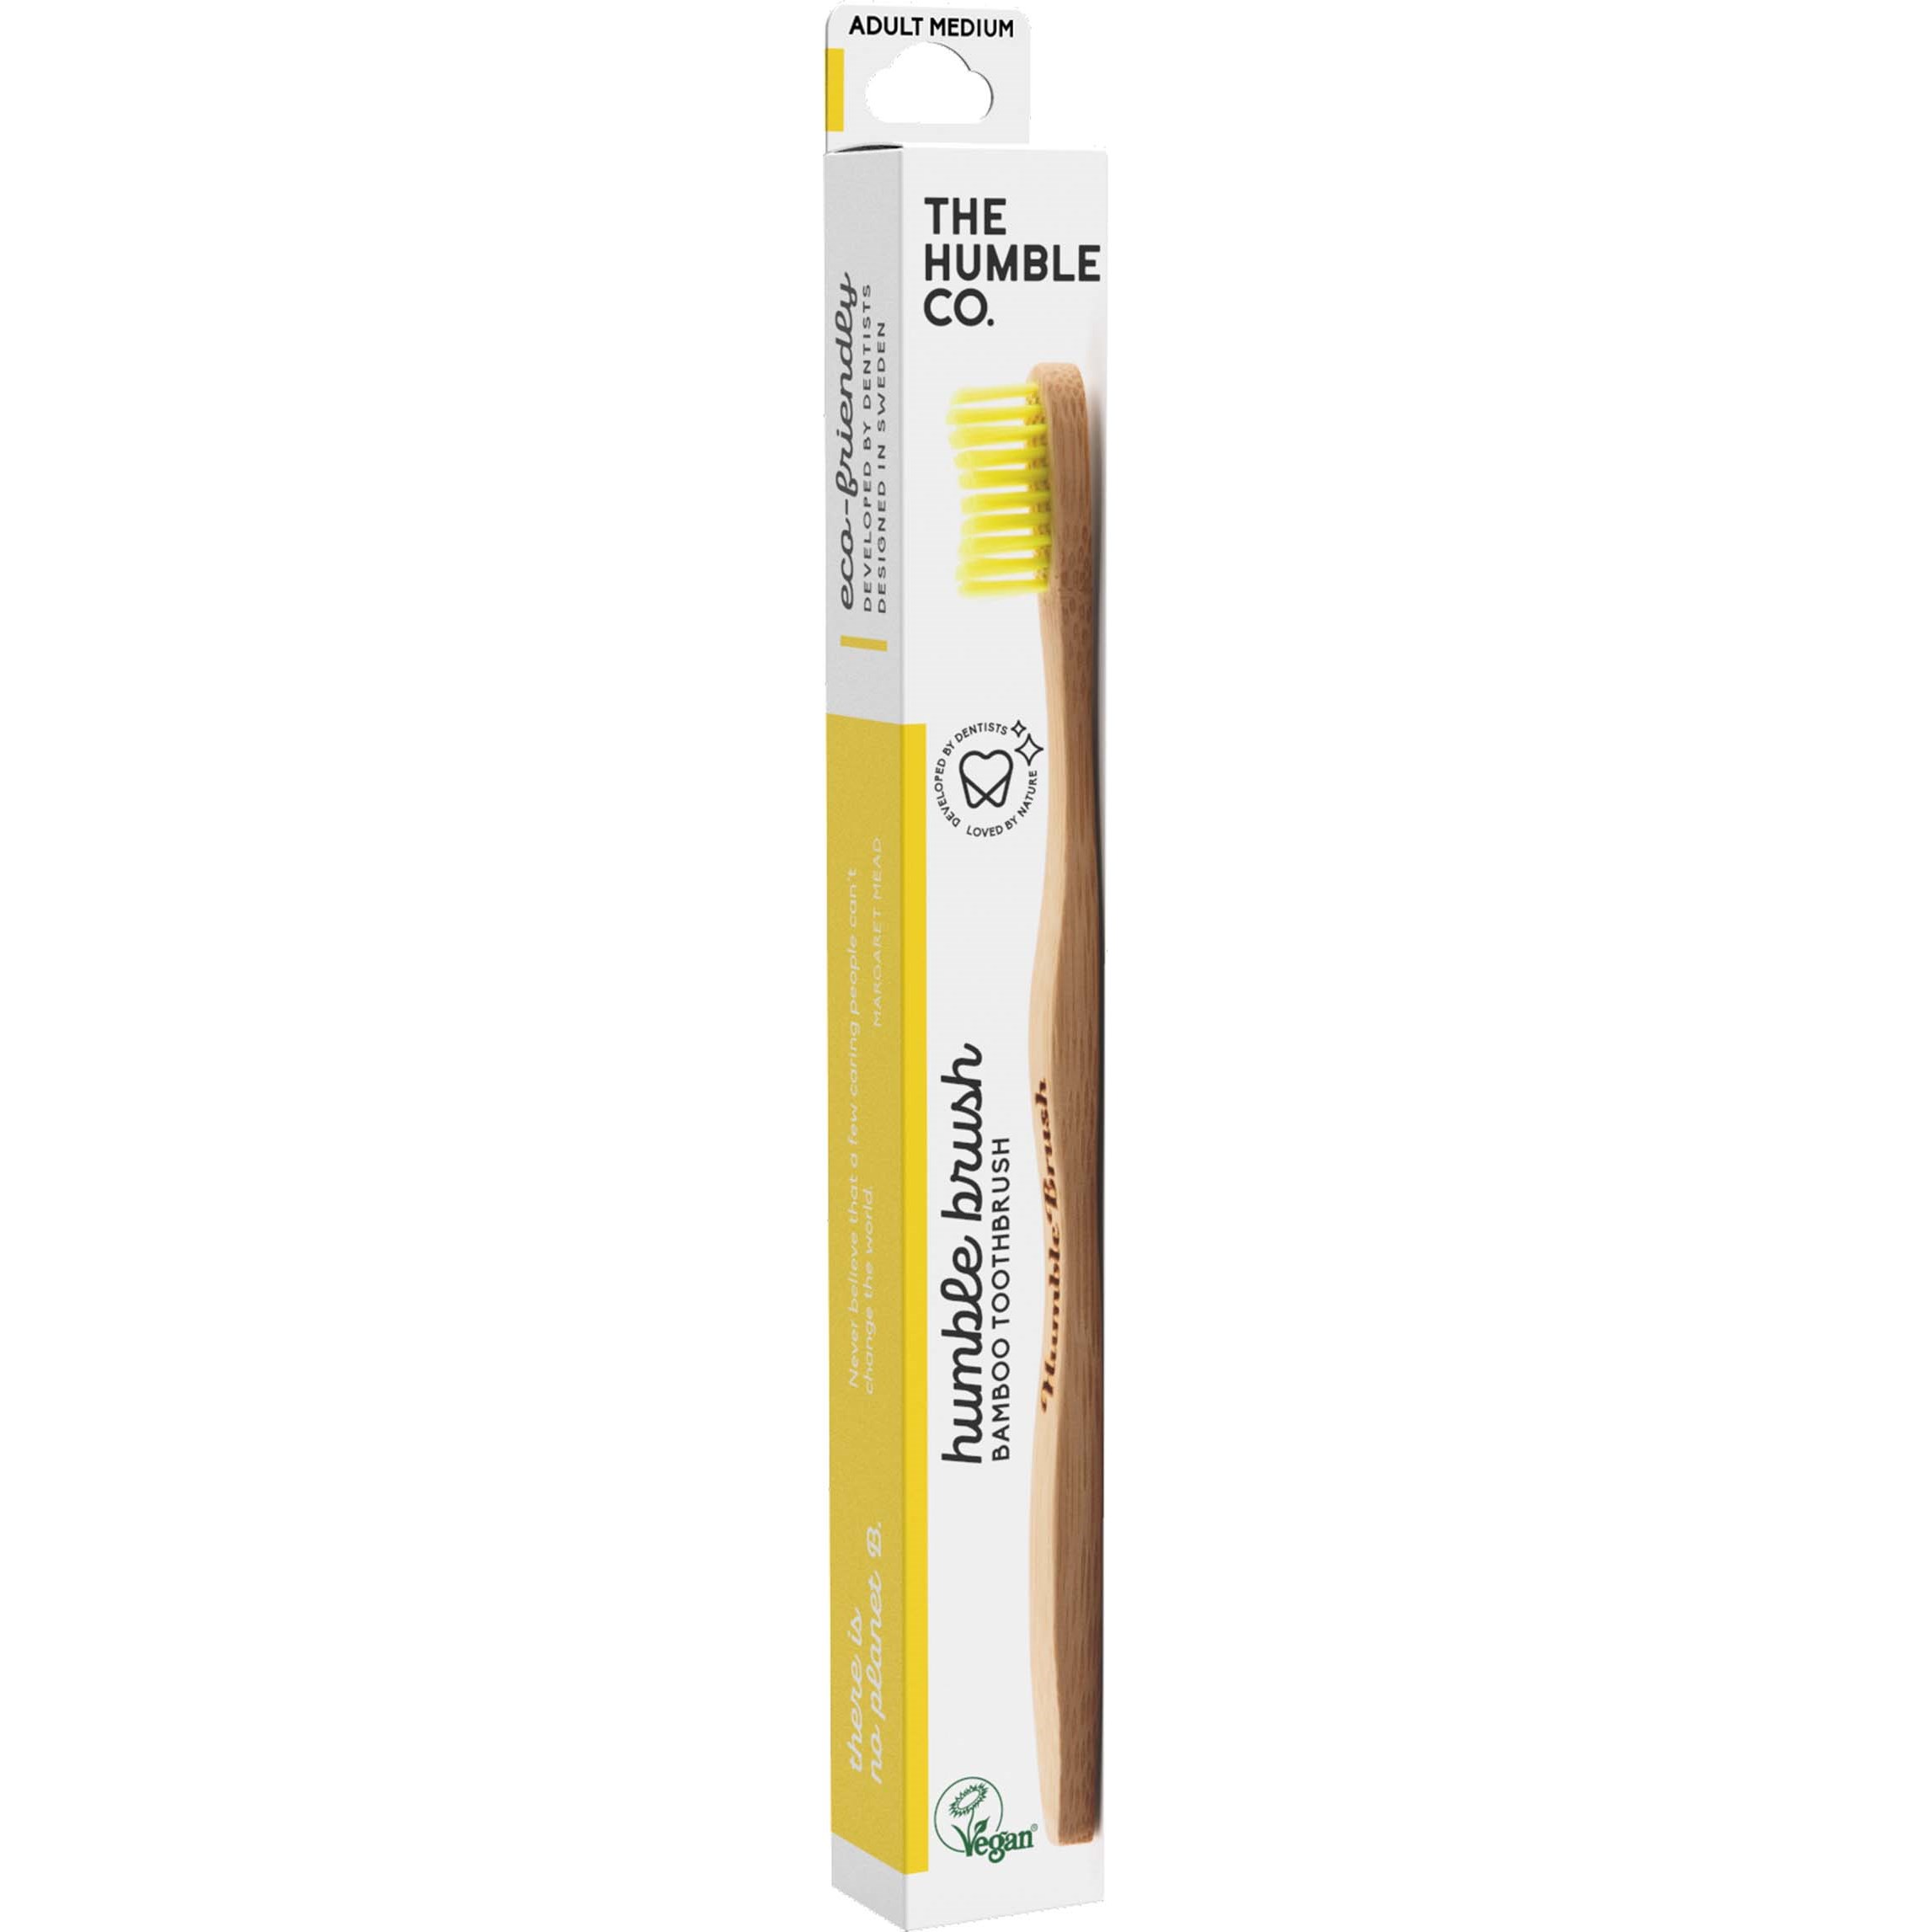 Bilde av The Humble Co. Bamboo Toothbrush Adult Medium Yellow